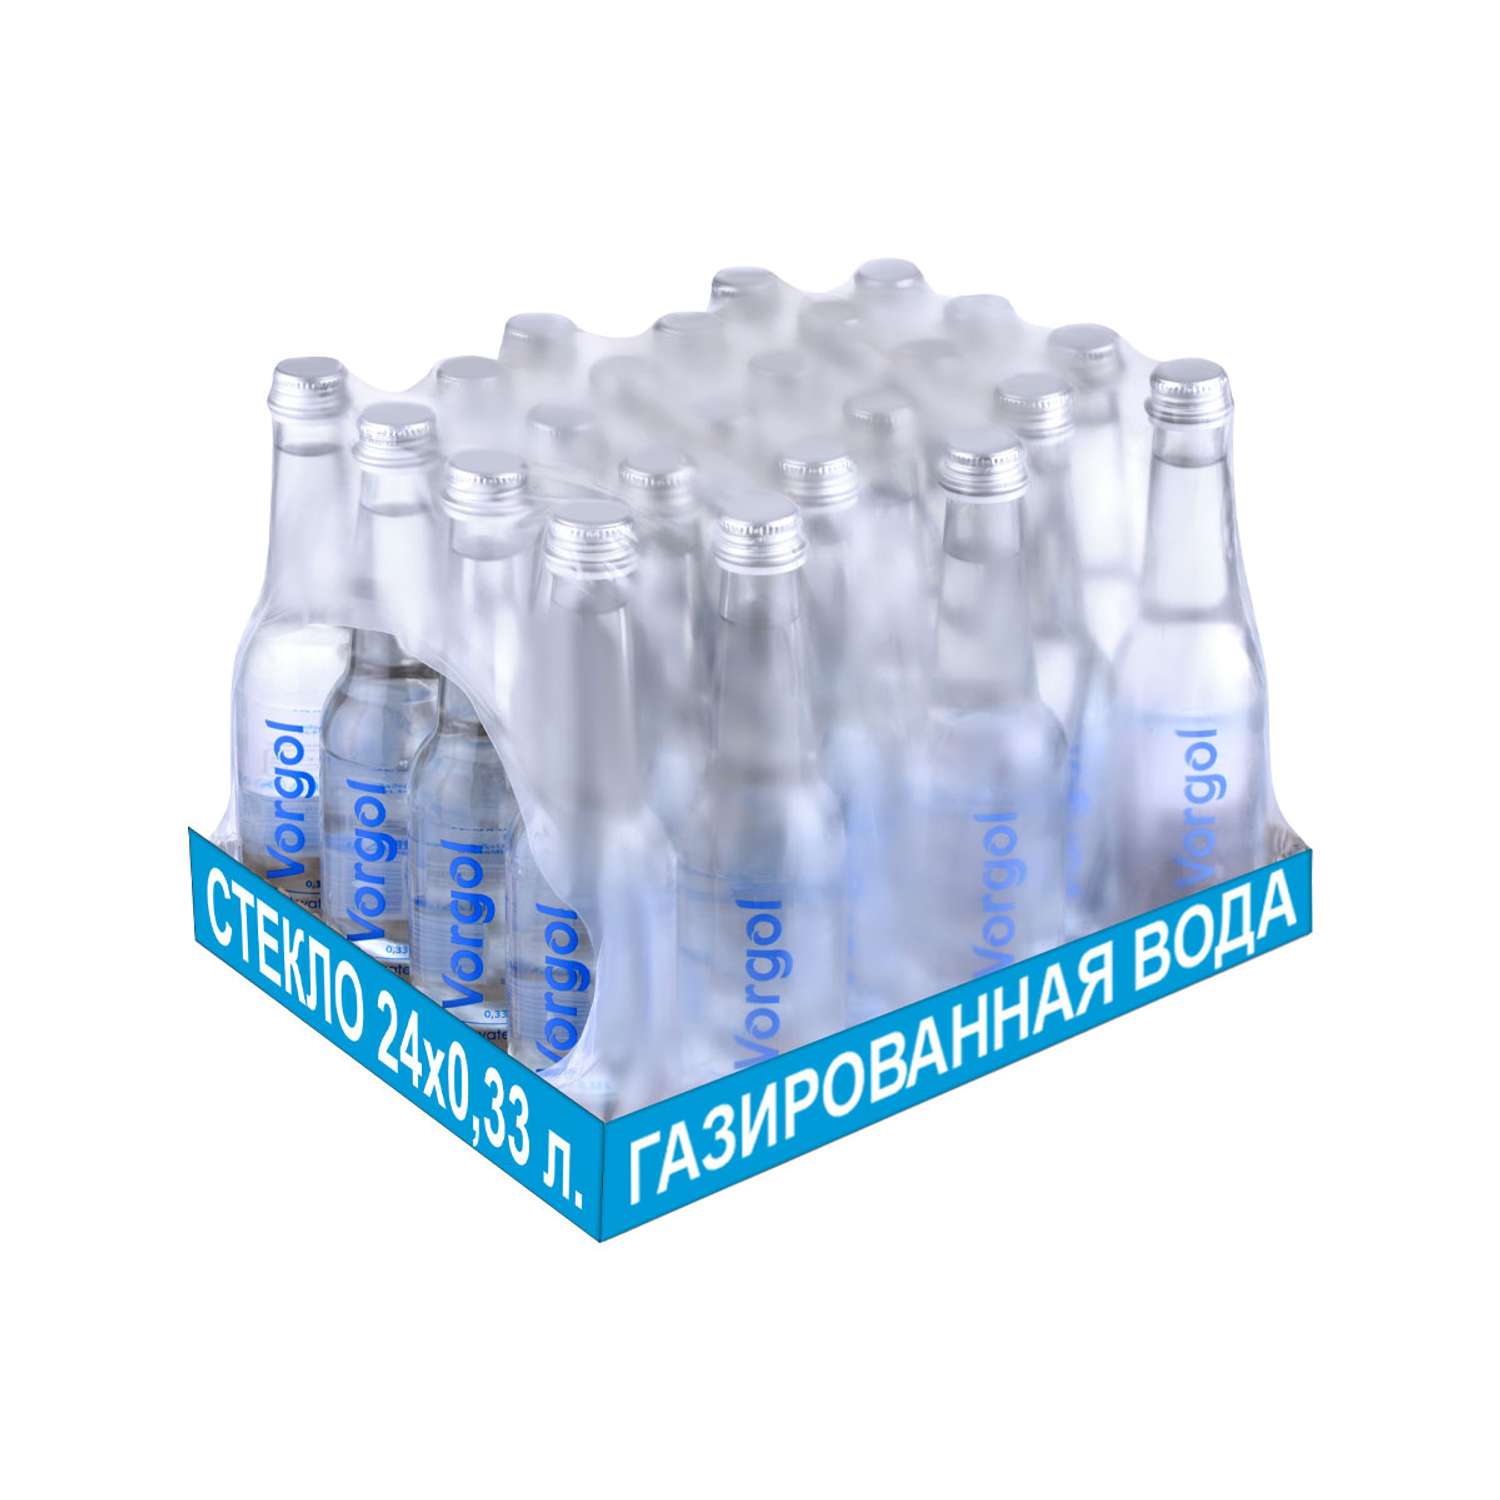 Вода питьевая Vorgol газированная артезианская в стекле 24 шт. по 0.33 л. - фото 1